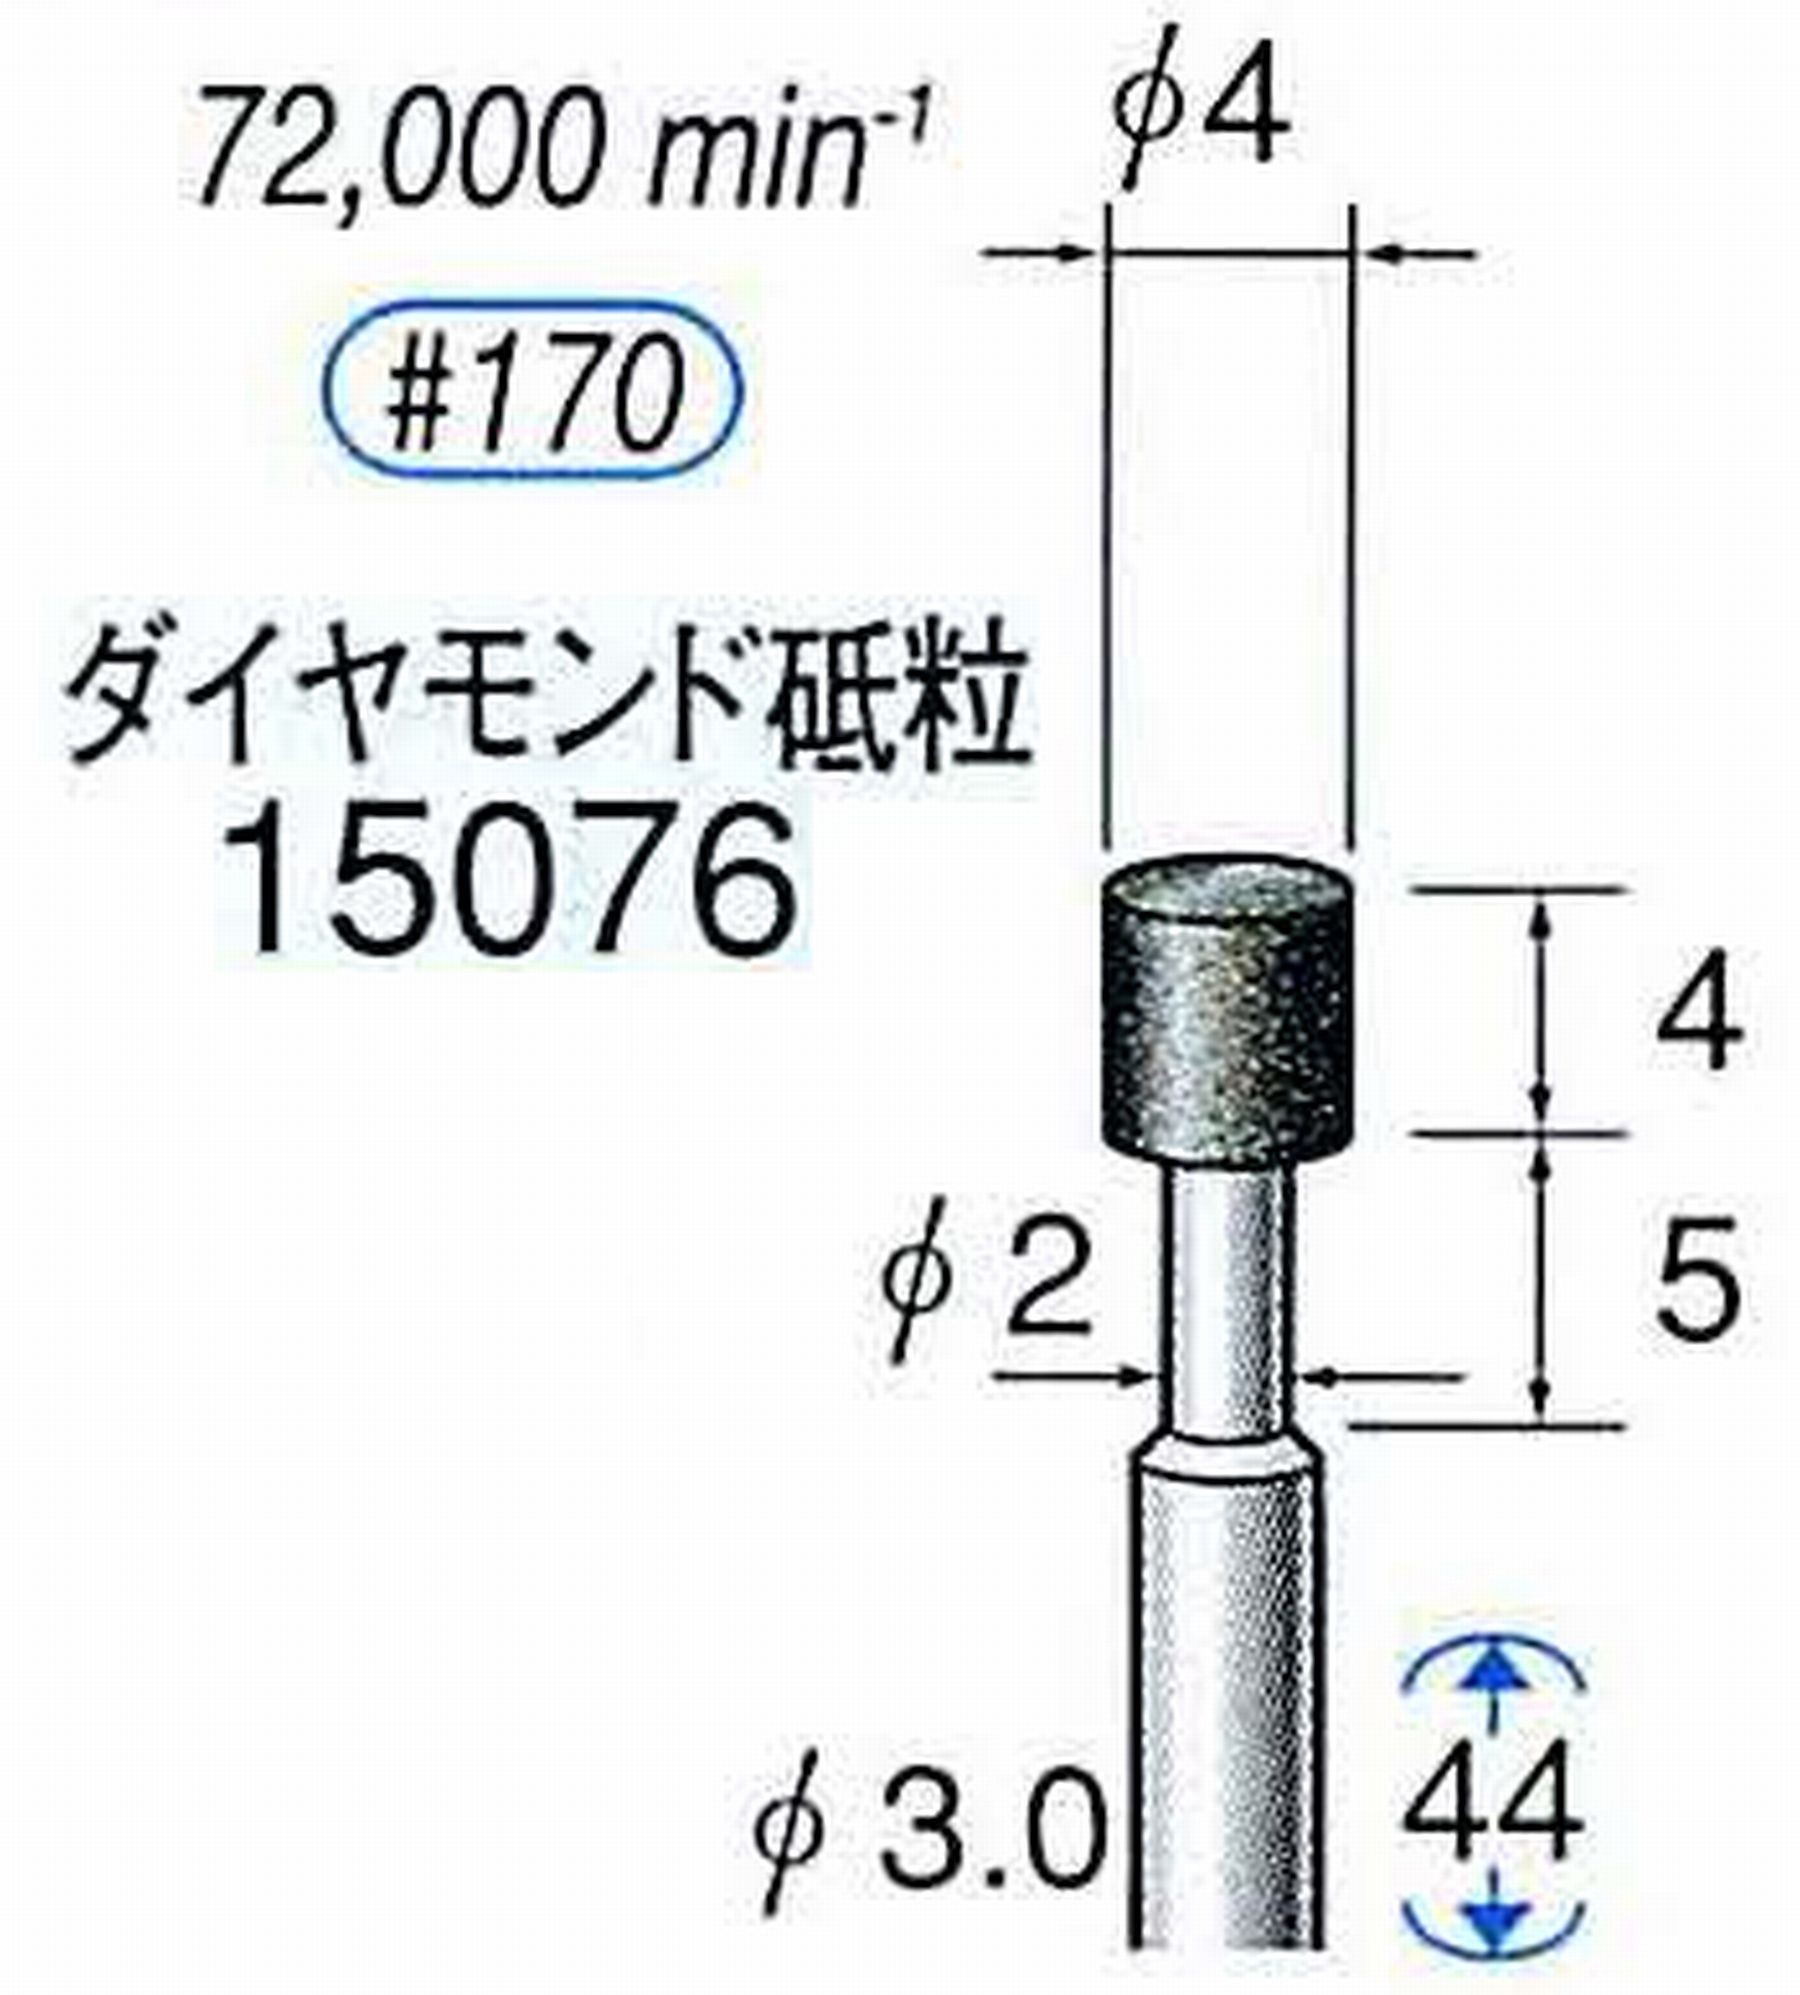 ナカニシ/NAKANISHI レジノイドダイヤモンド ダイヤモンド砥粒 軸径(シャンク)φ3.0mm 15076